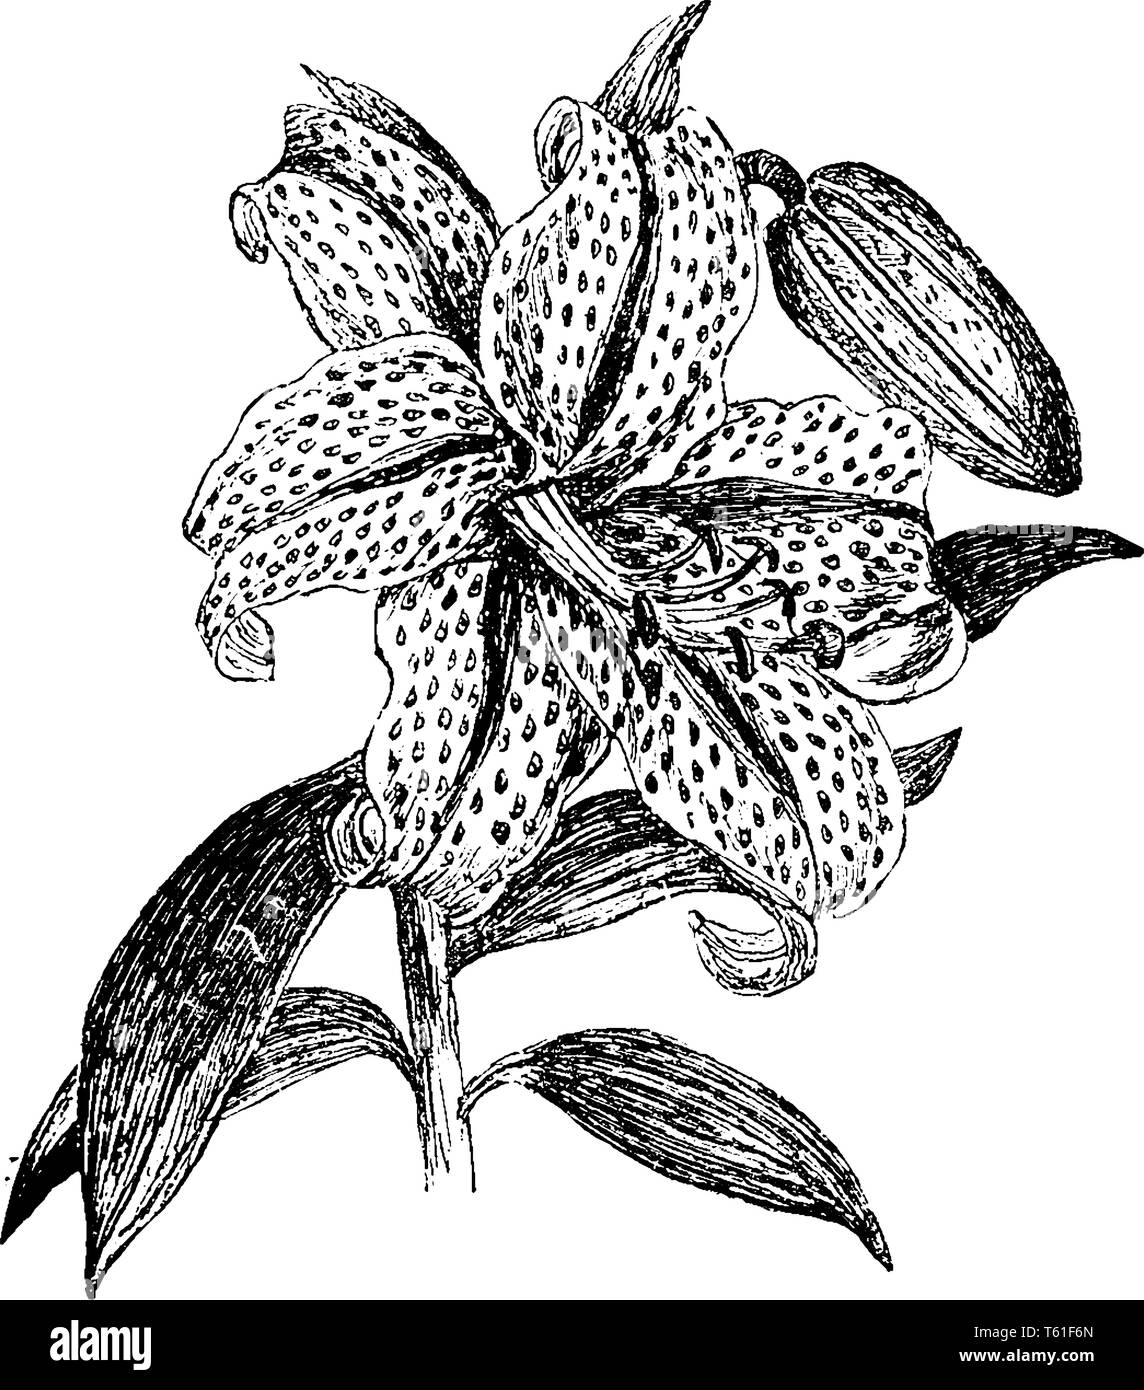 Il s'agit d'une photo d'une fleur appelée Golden Villeuse Lily, ces fleurs sont de couleur blanche et ivied il y a beaucoup de différentes bandes centrale de beaucoup d'obscurité Illustration de Vecteur